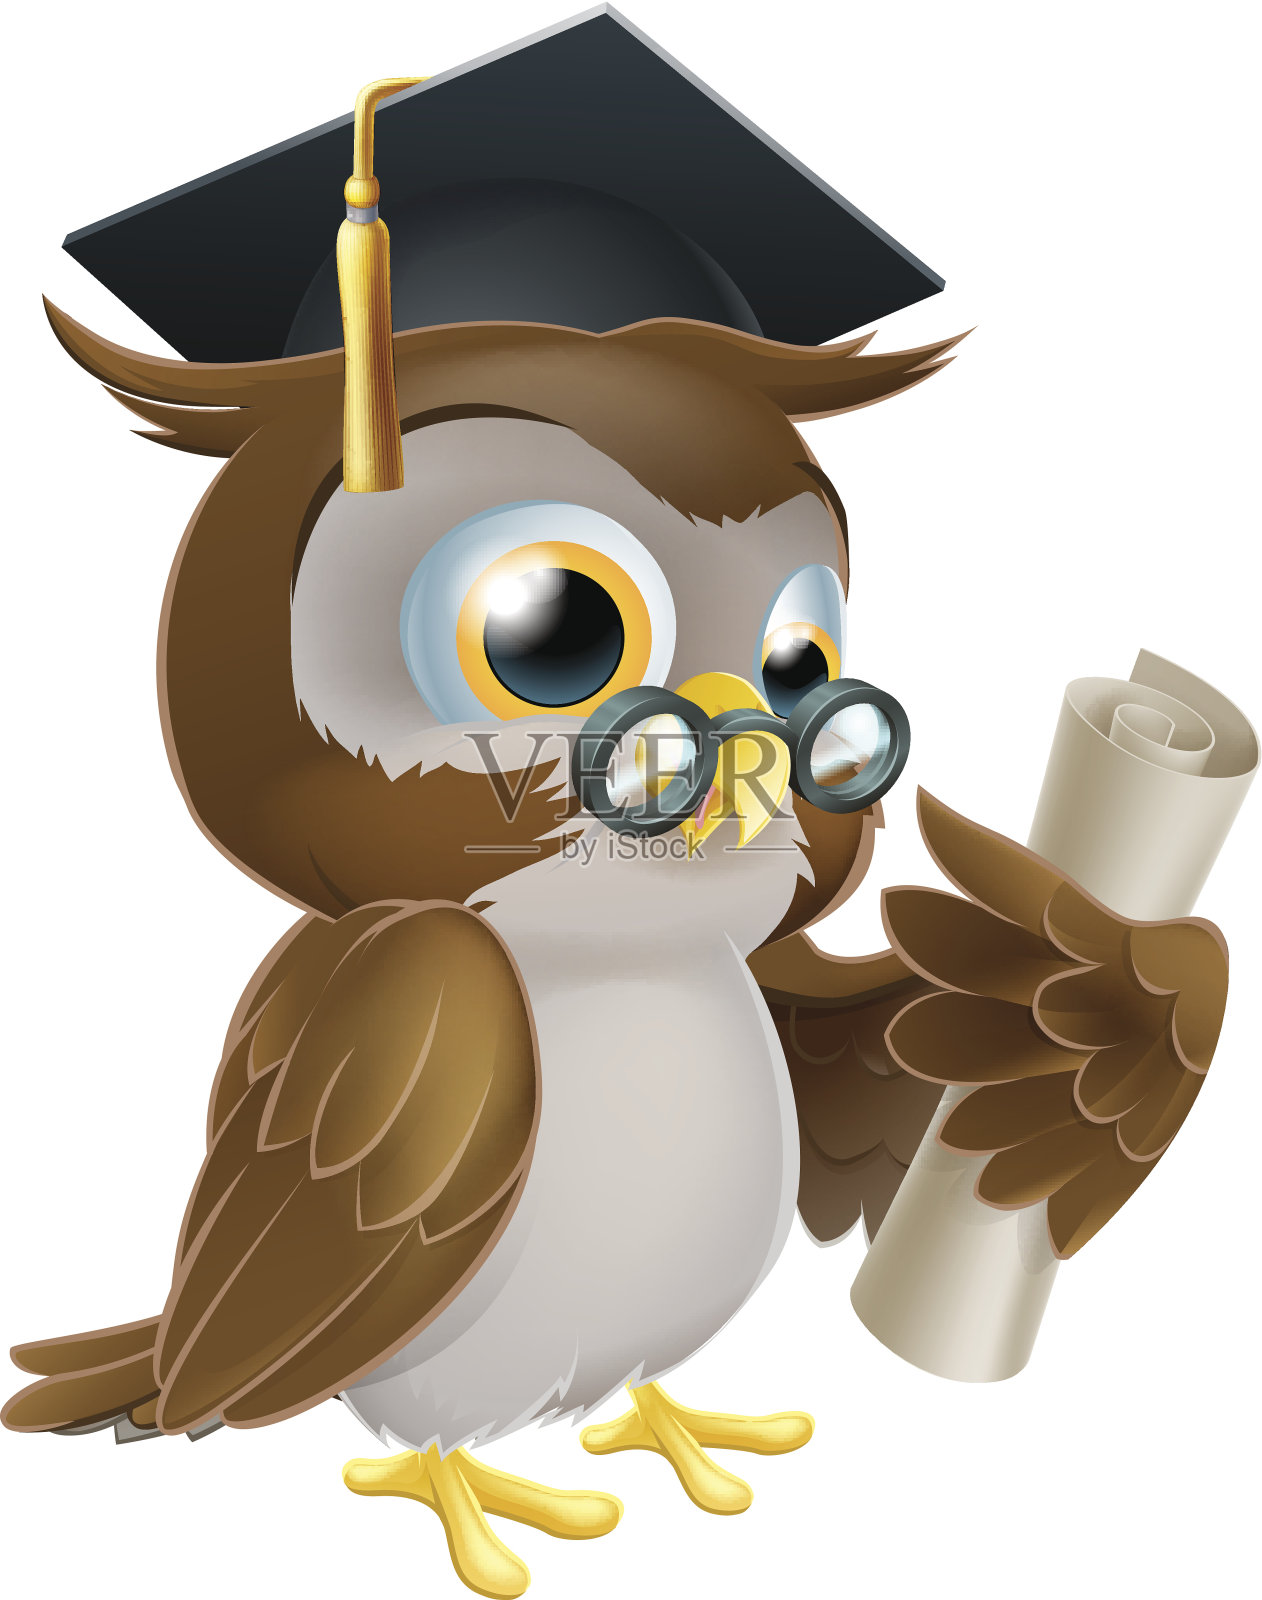 有学位或资格证书的猫头鹰设计元素图片